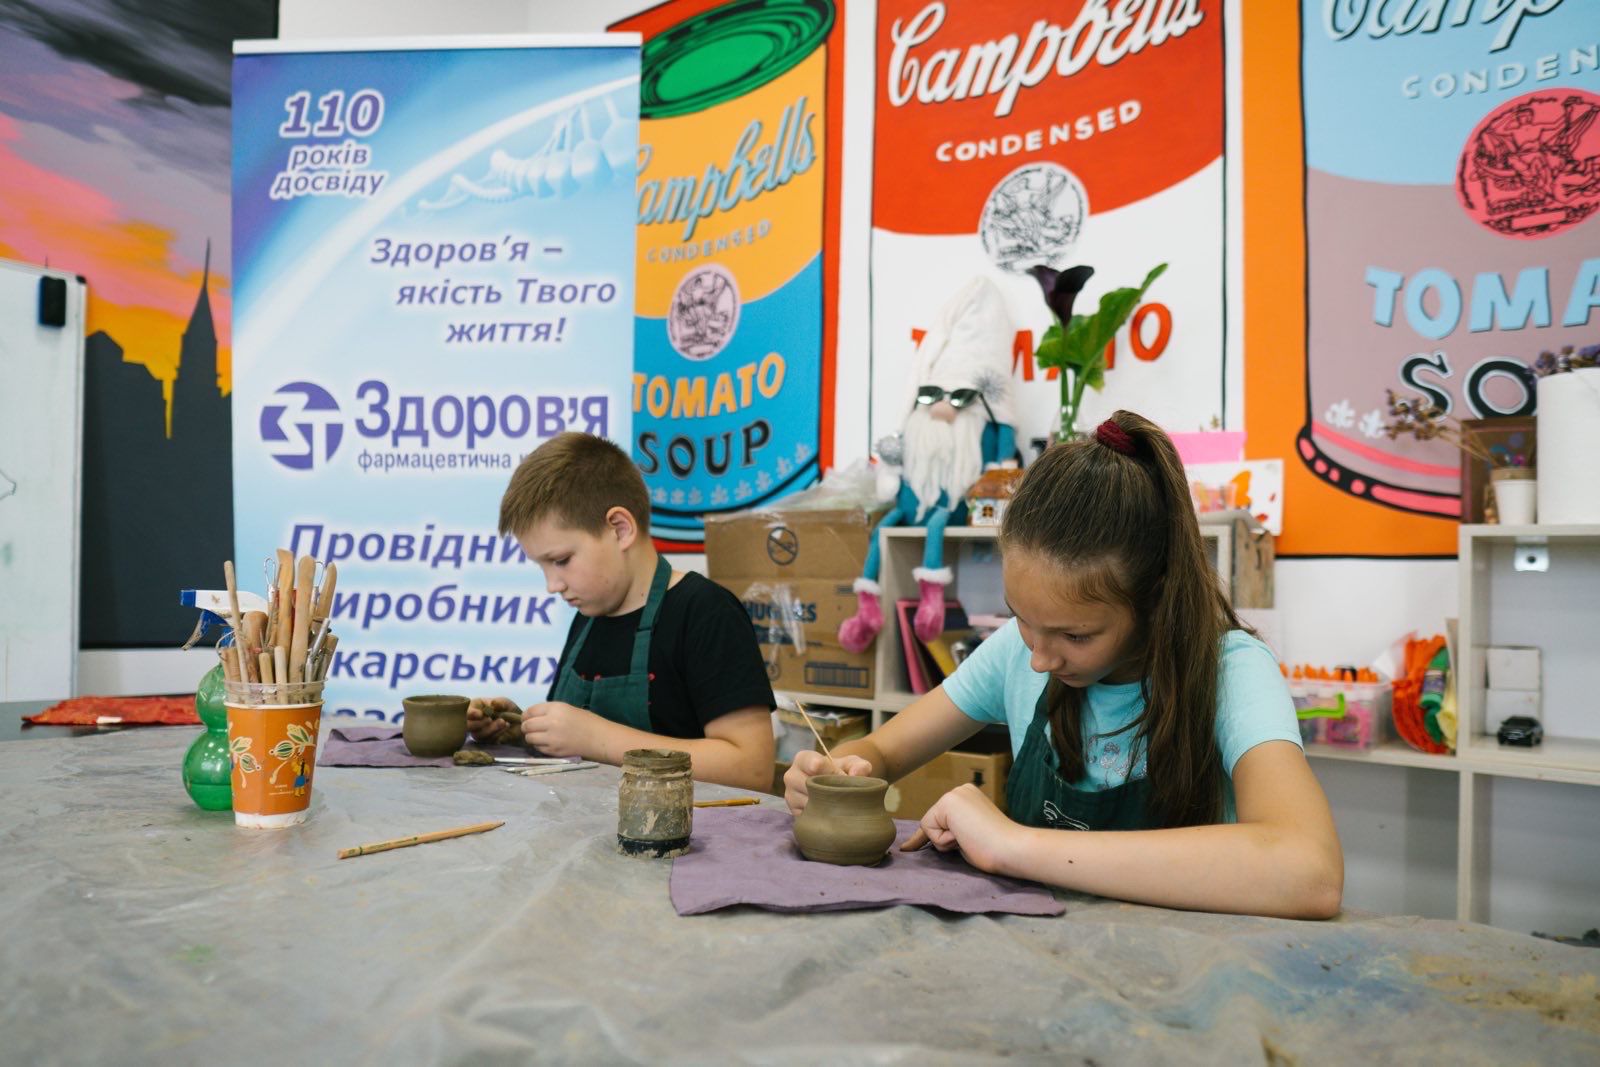 При поддержке Александра Доровского дети Харькова бесплатно посещают занятия по арттерапии  - фото 2